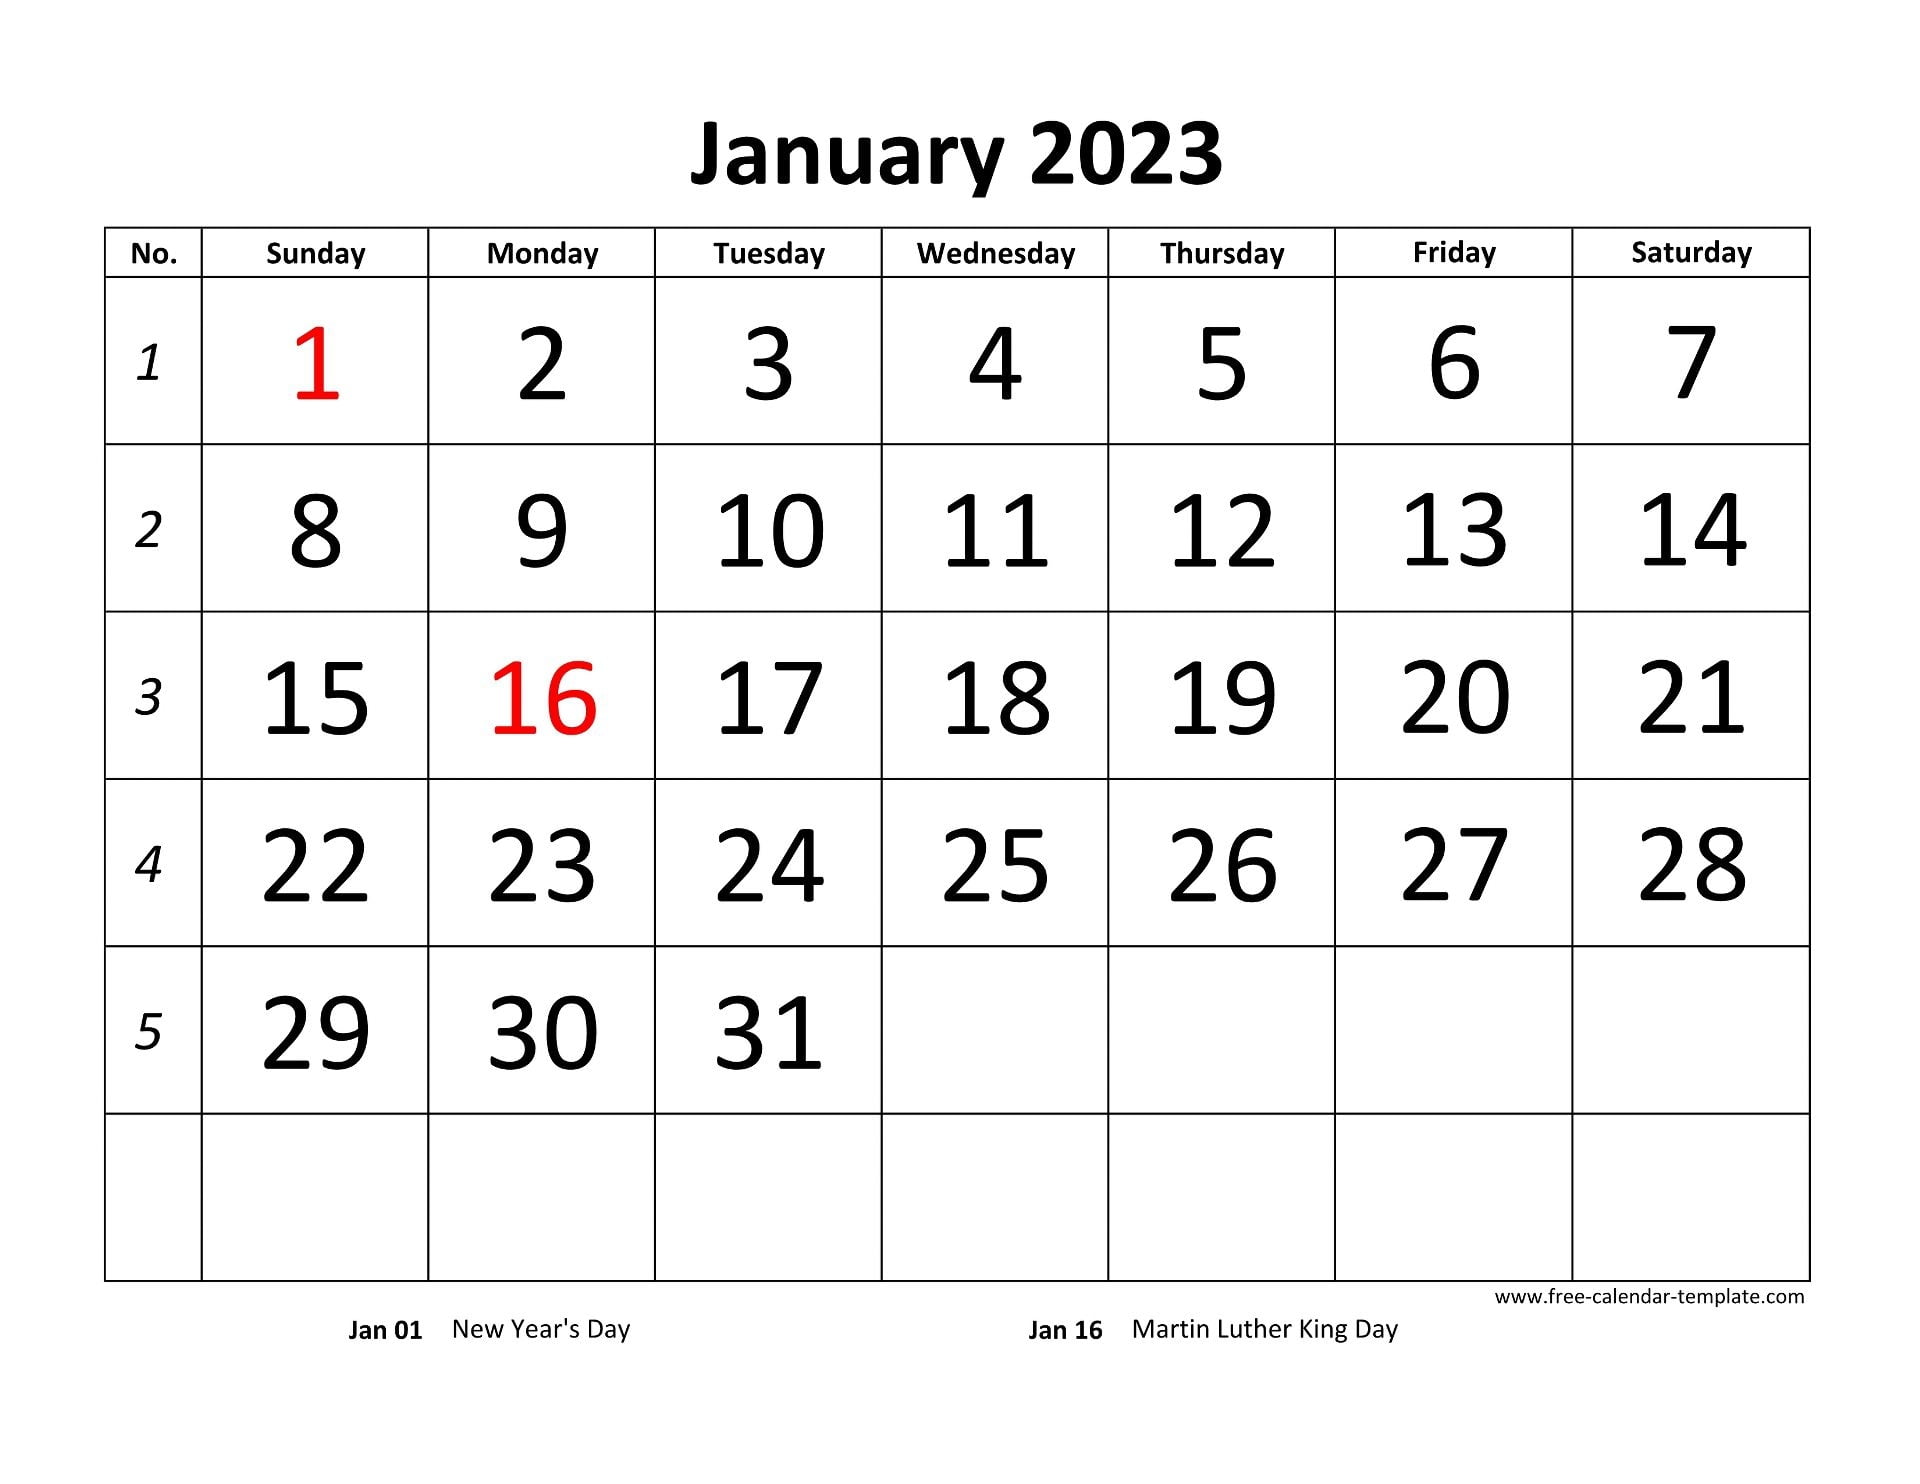 Calendars 2023 Free Printable Download